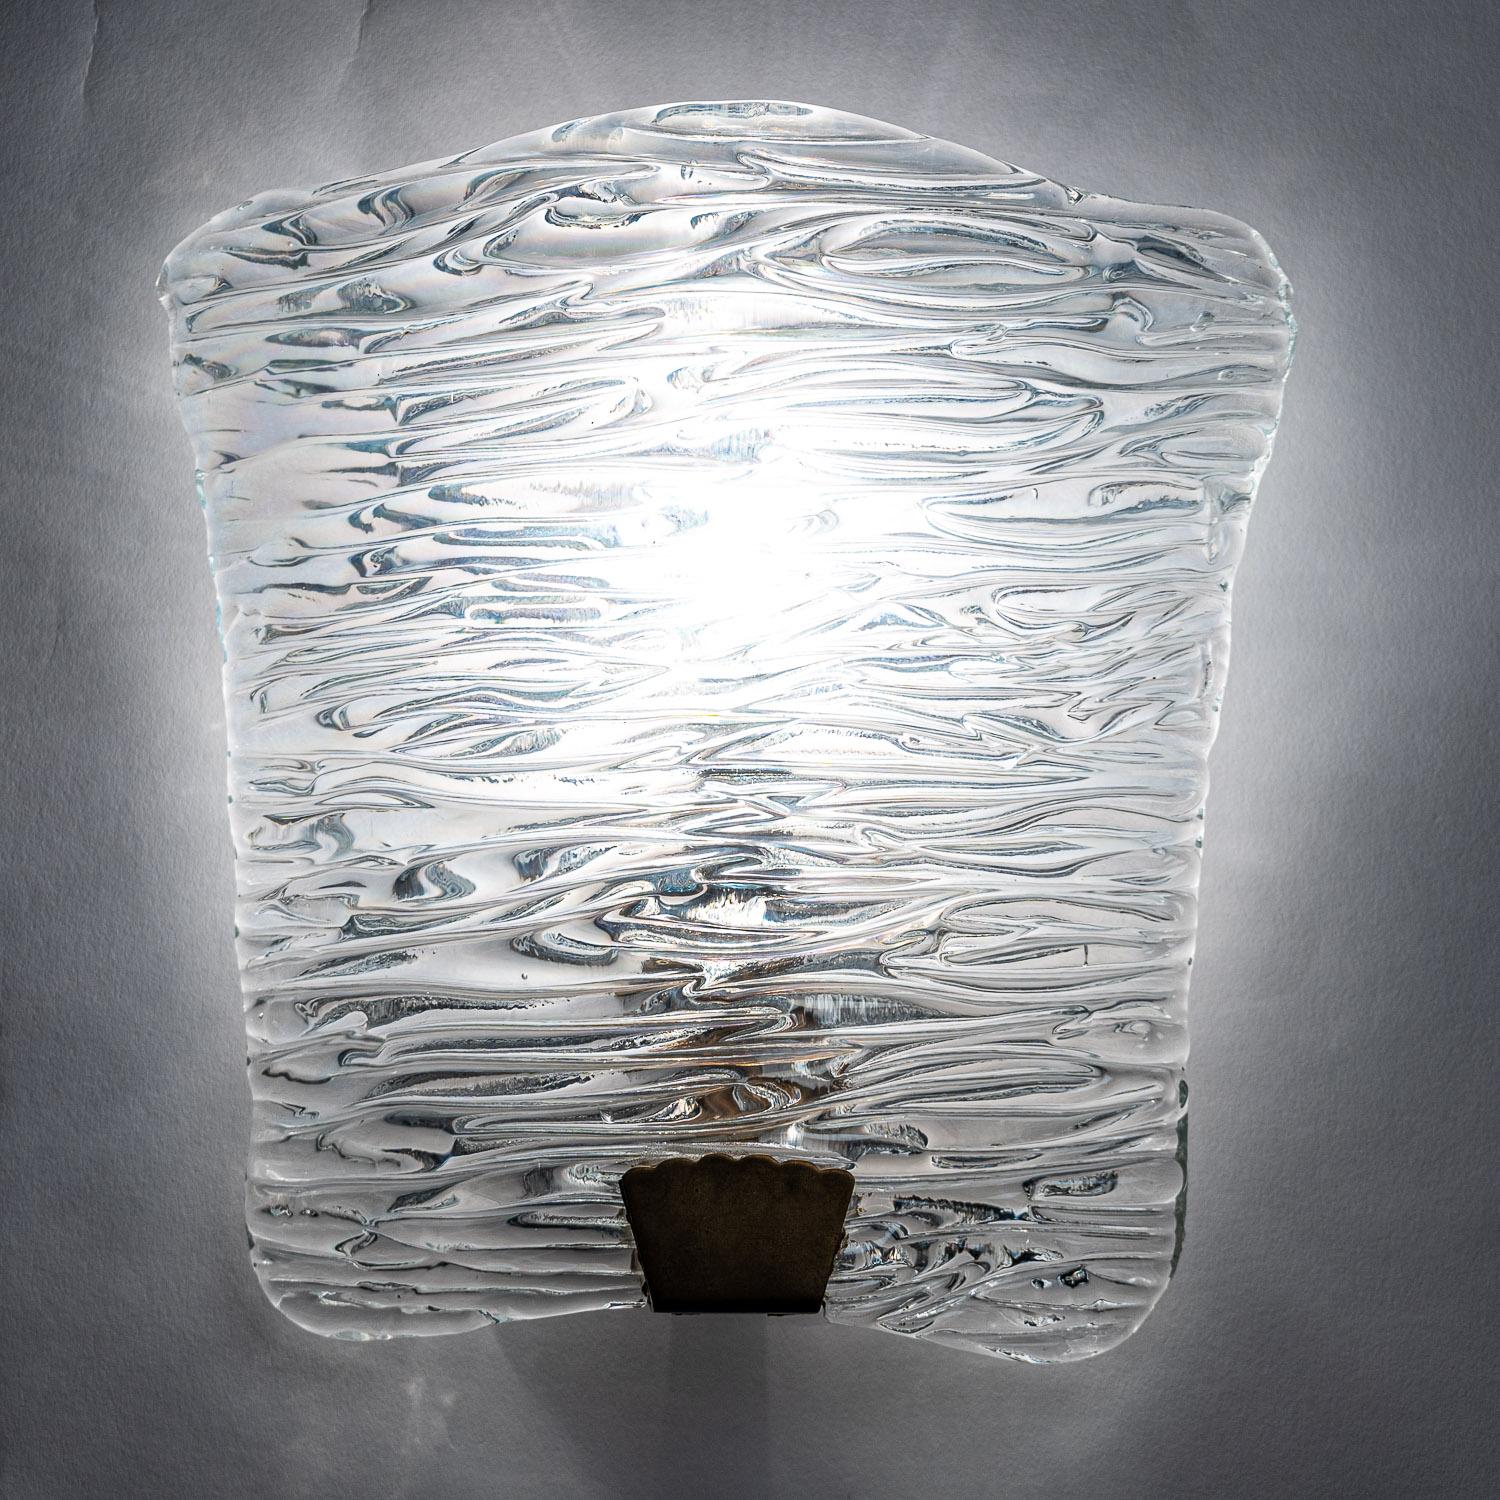 Dies ist ein außergewöhnliches Beispiel für künstlerisches Lichtdesign. Eine gerippte Glasplatte mit einer einzelnen E14-Glühbirne. Einfach, aber sehr interessant.
 